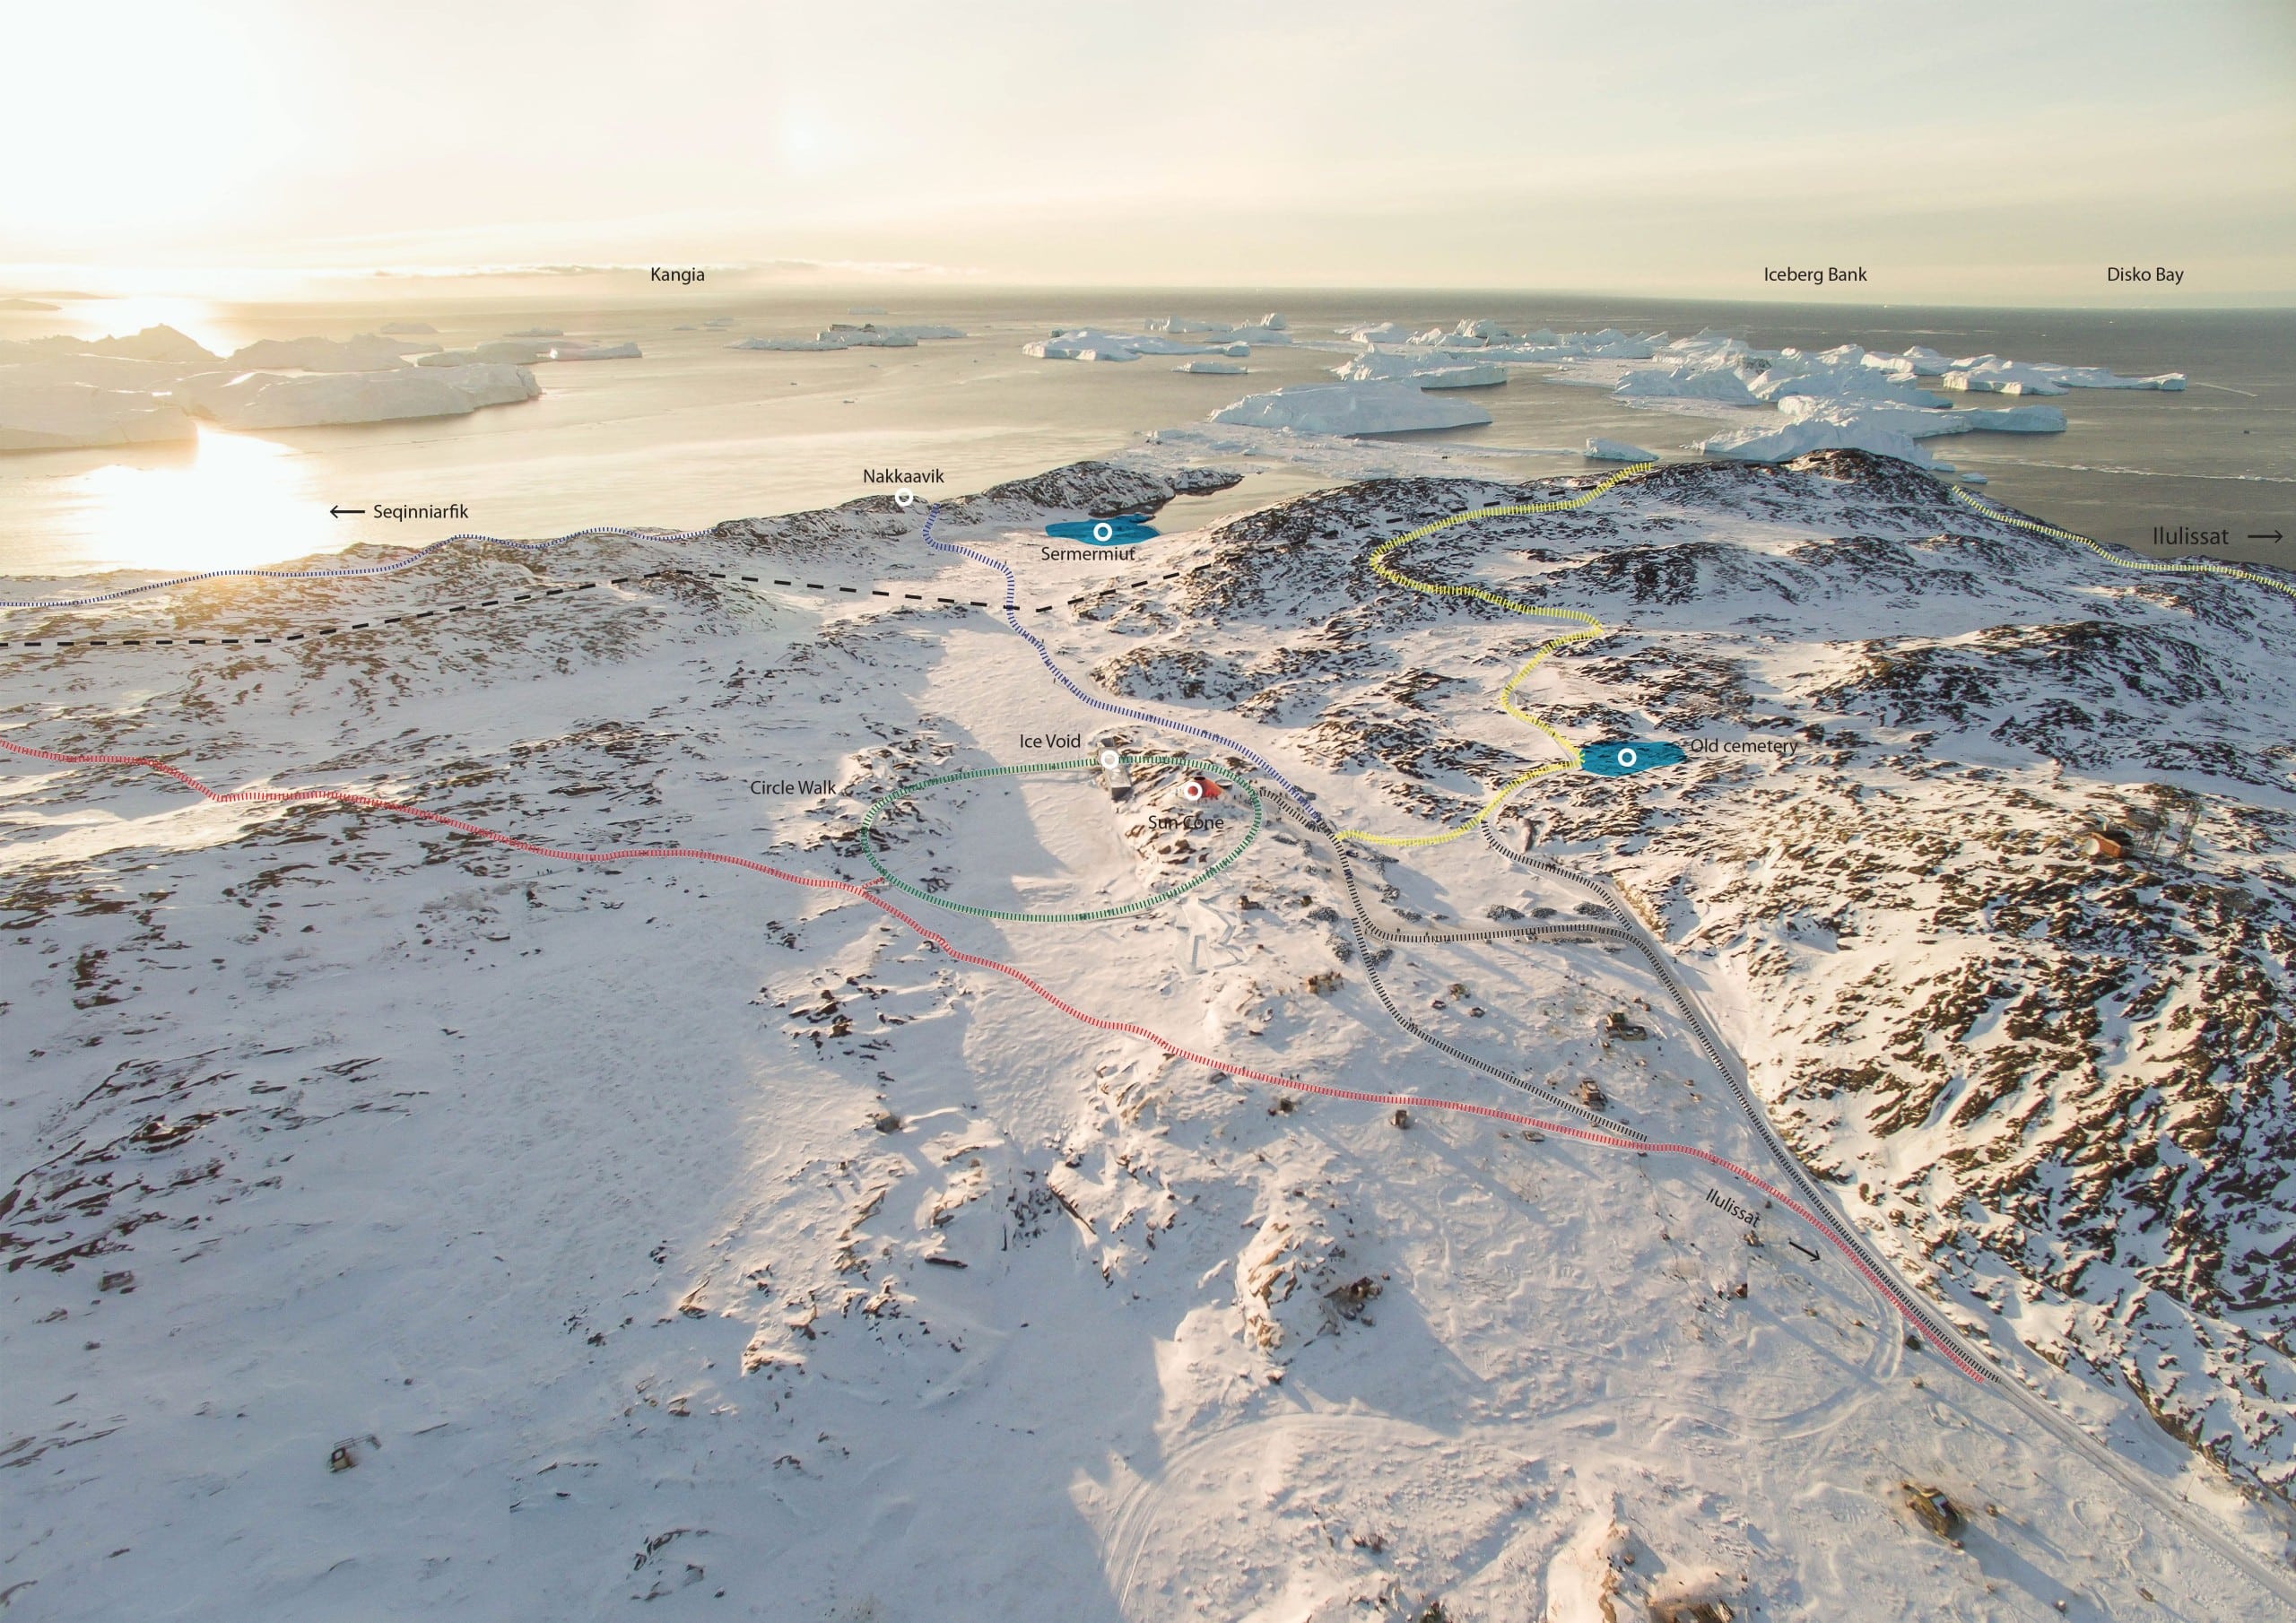 Der Park Ilulissat Eisfjord in Grönland von Studio Other Spaces bietet einen Maßstab für die Betrachtung des gleichnamigen Naturphänomens.